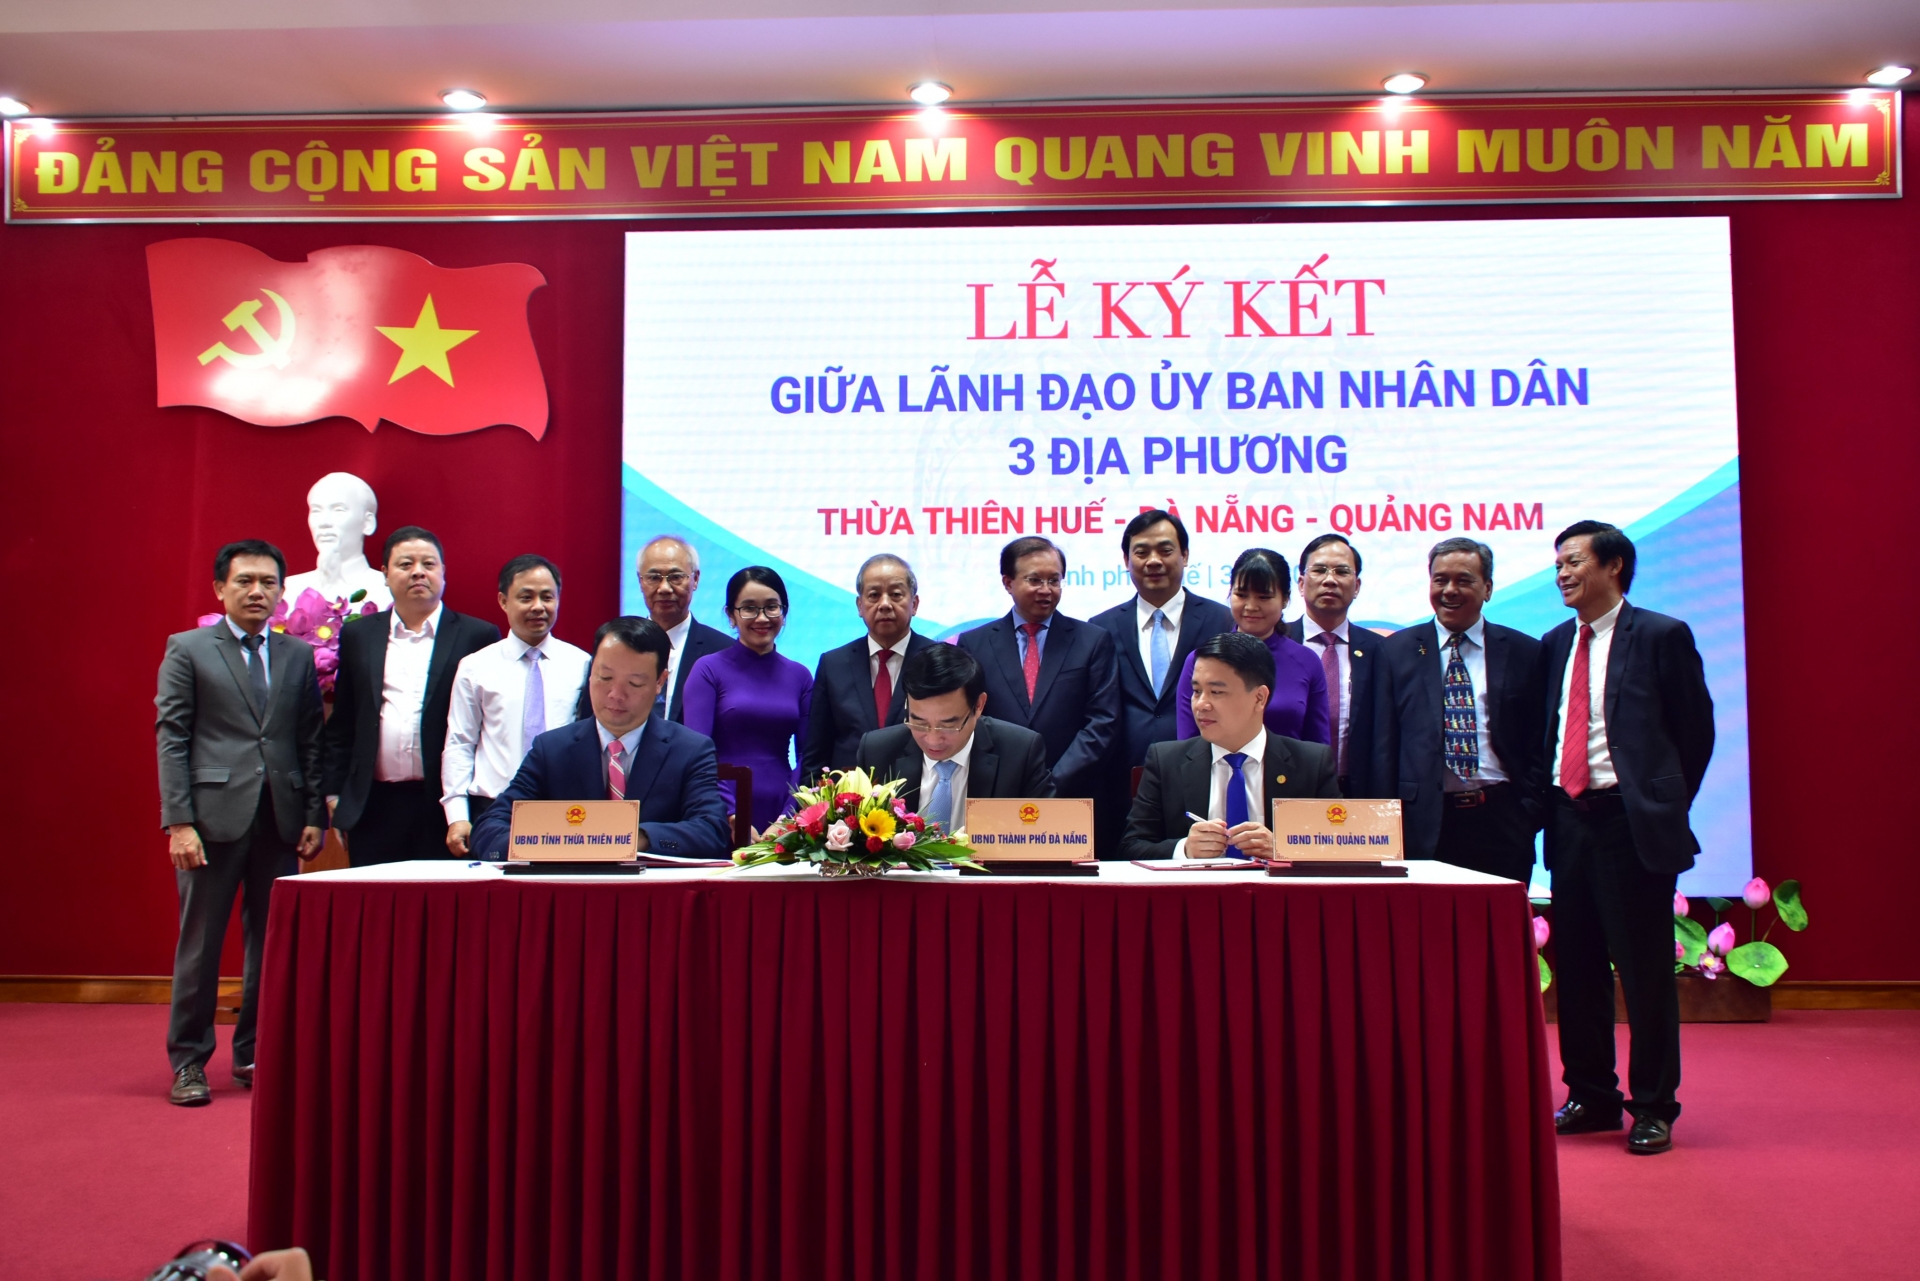 Thừa Thiên Huế - Đà Nẵng - Quảng Nam ký kết hợp tác phát triển du lịch